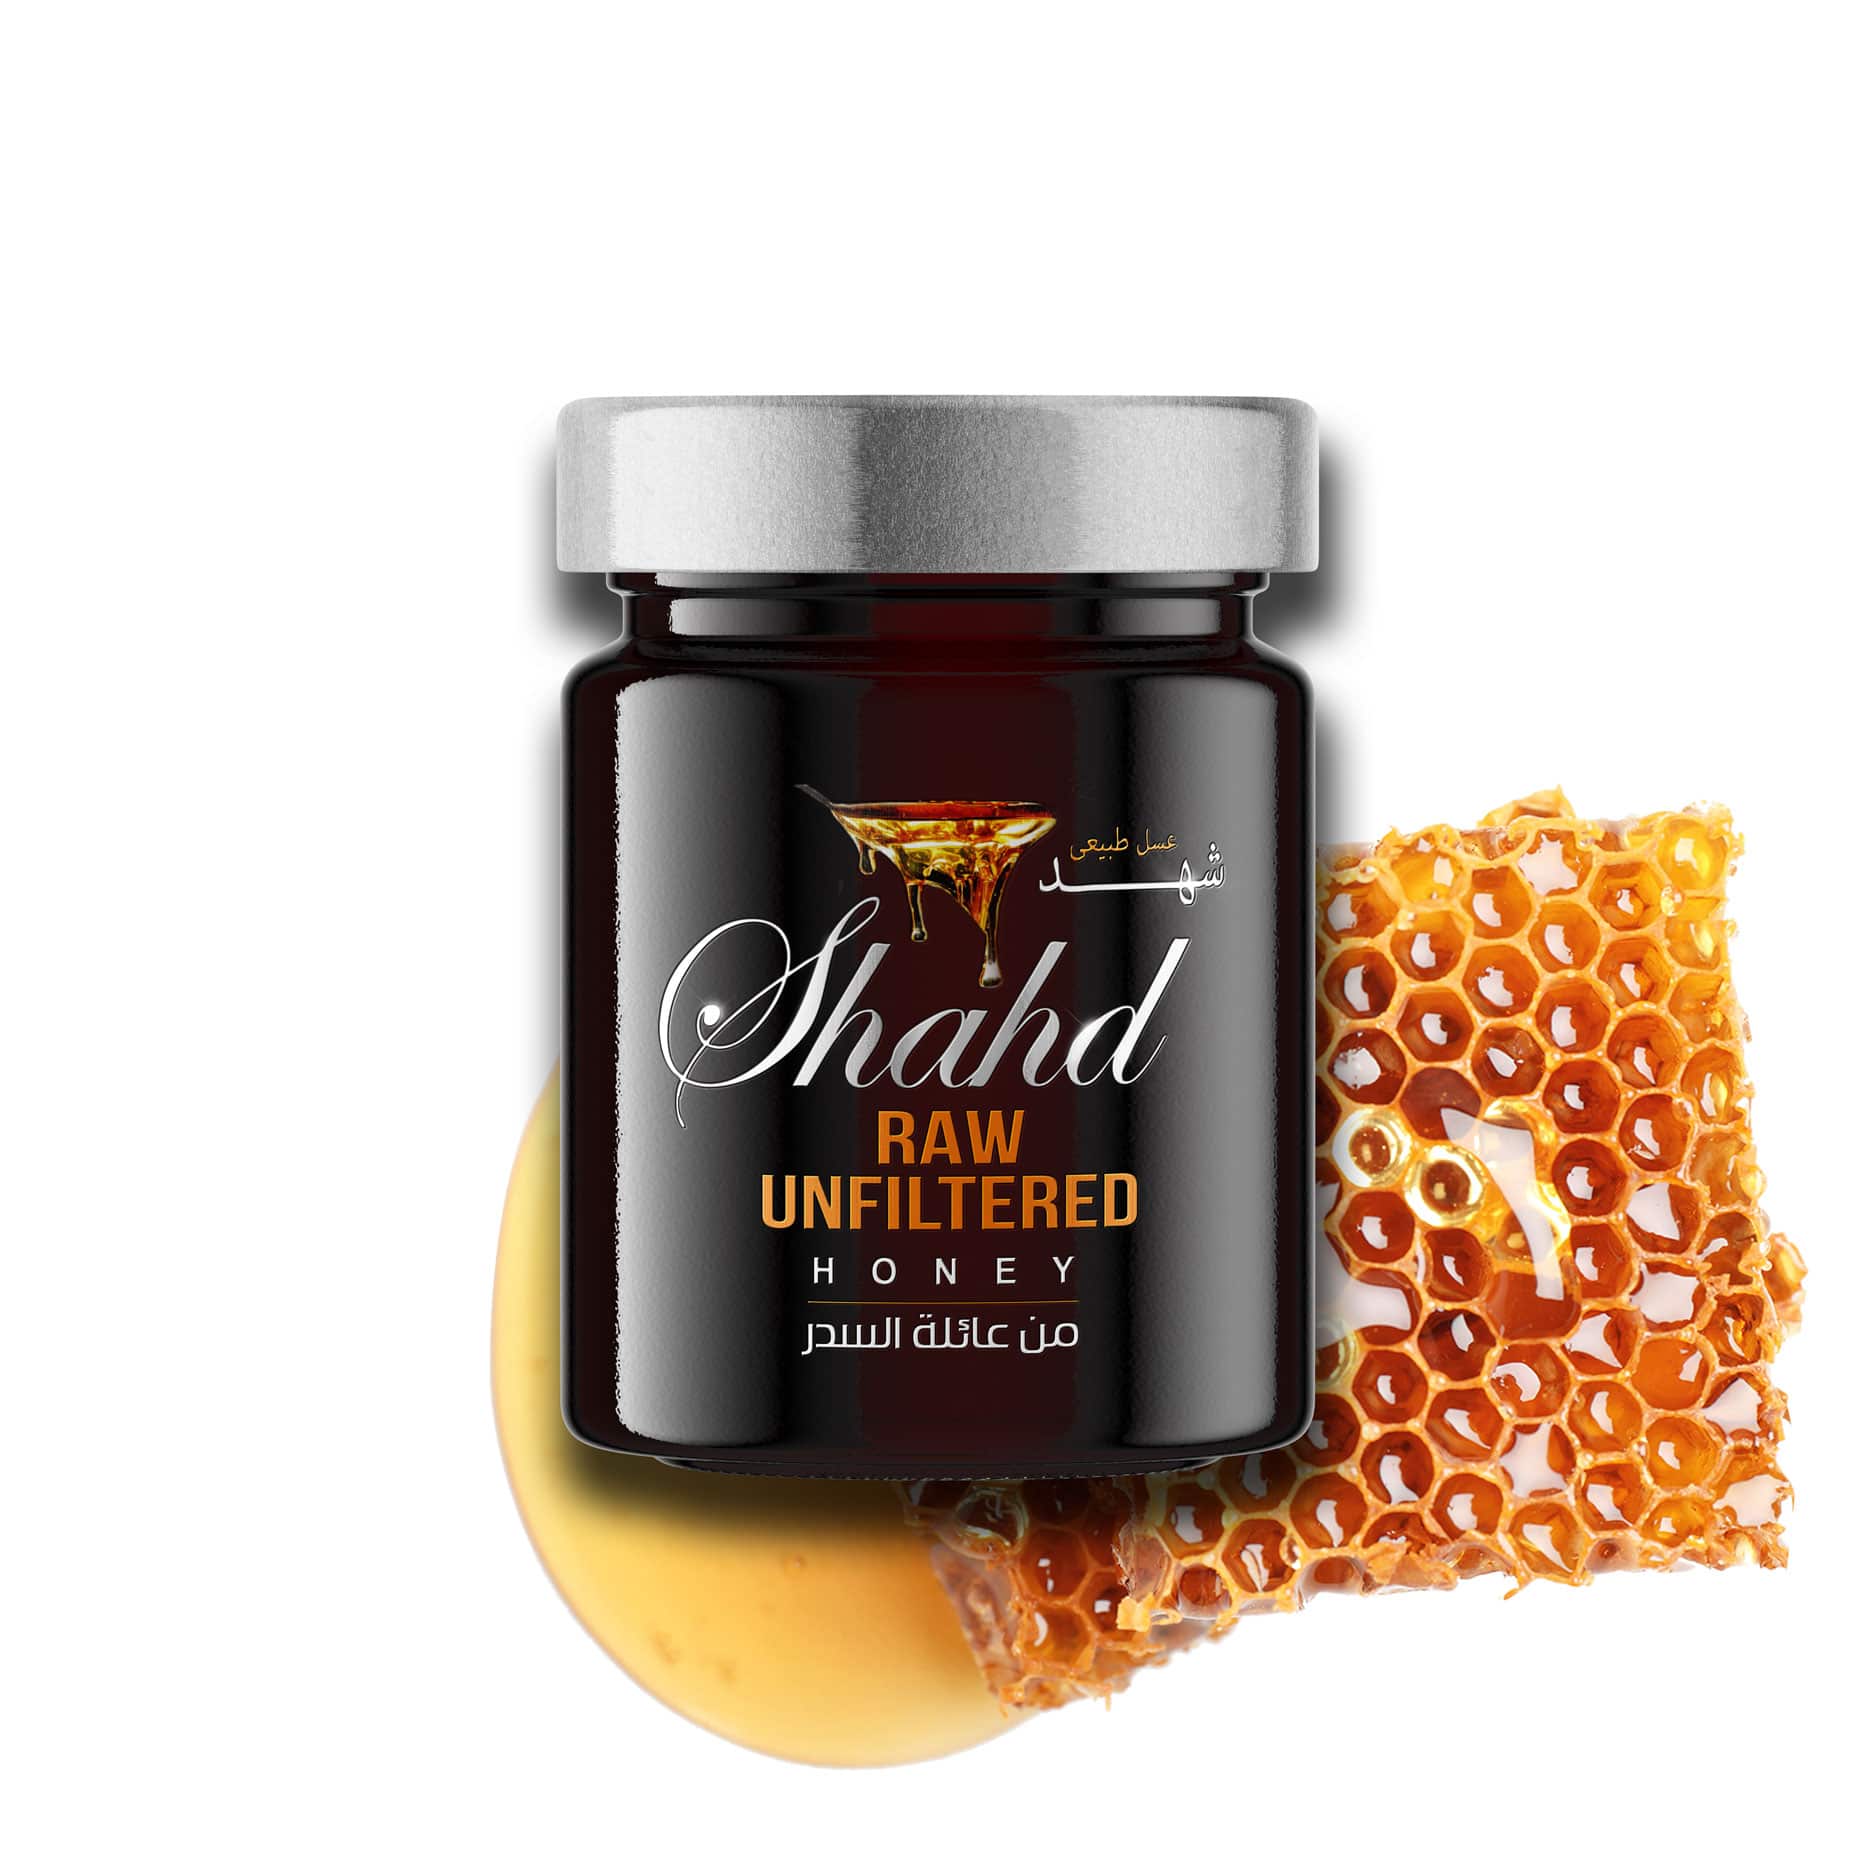 Shahd Honey Unfiltered 454g